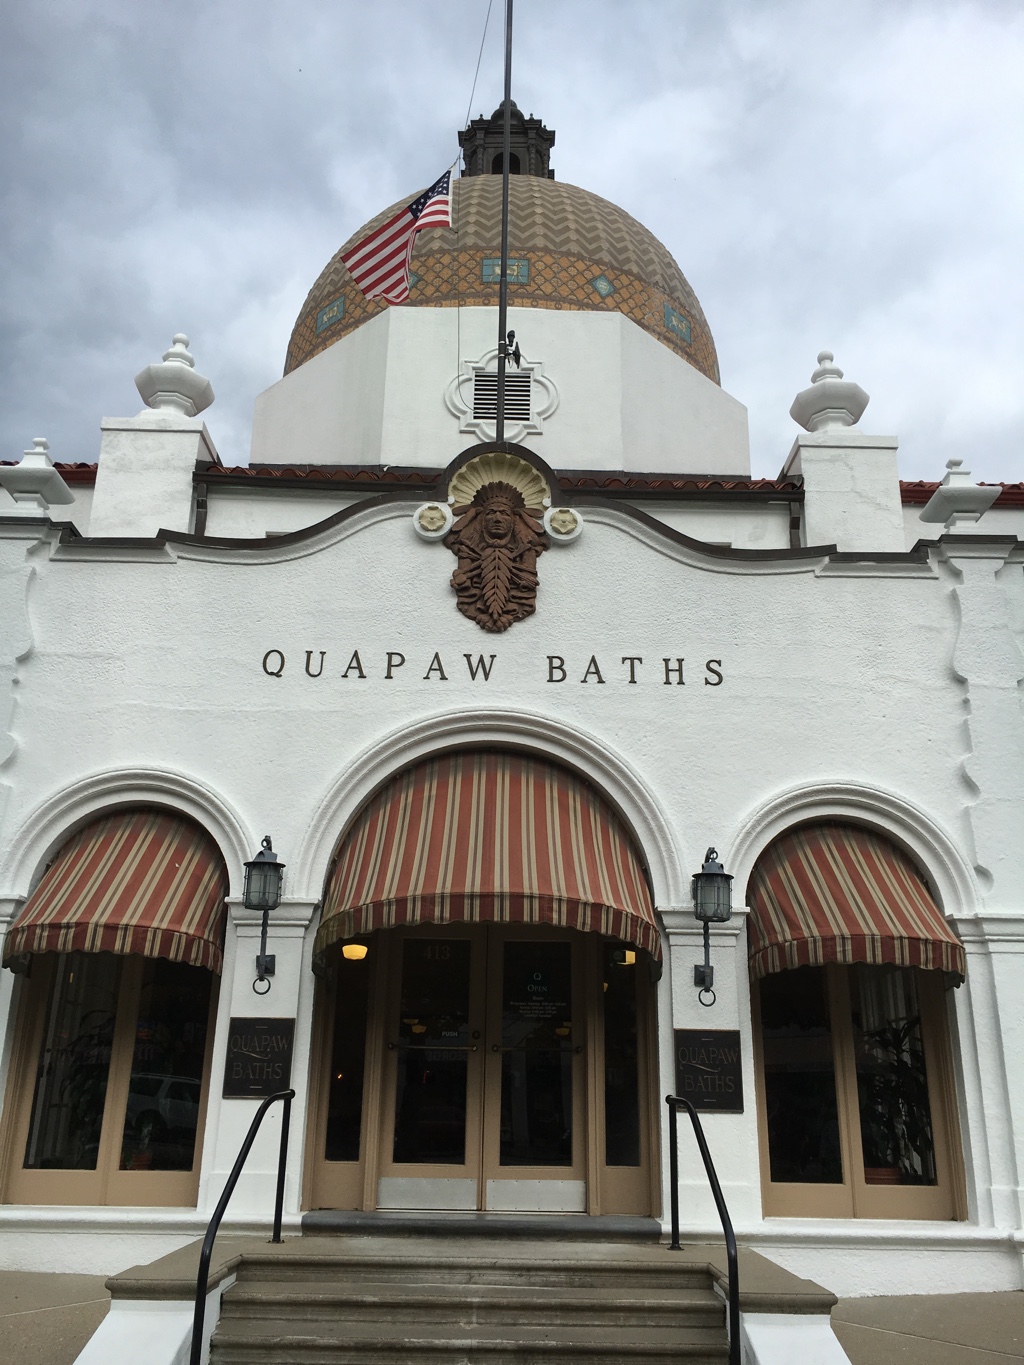 Exterior of Quapaw Baths building.